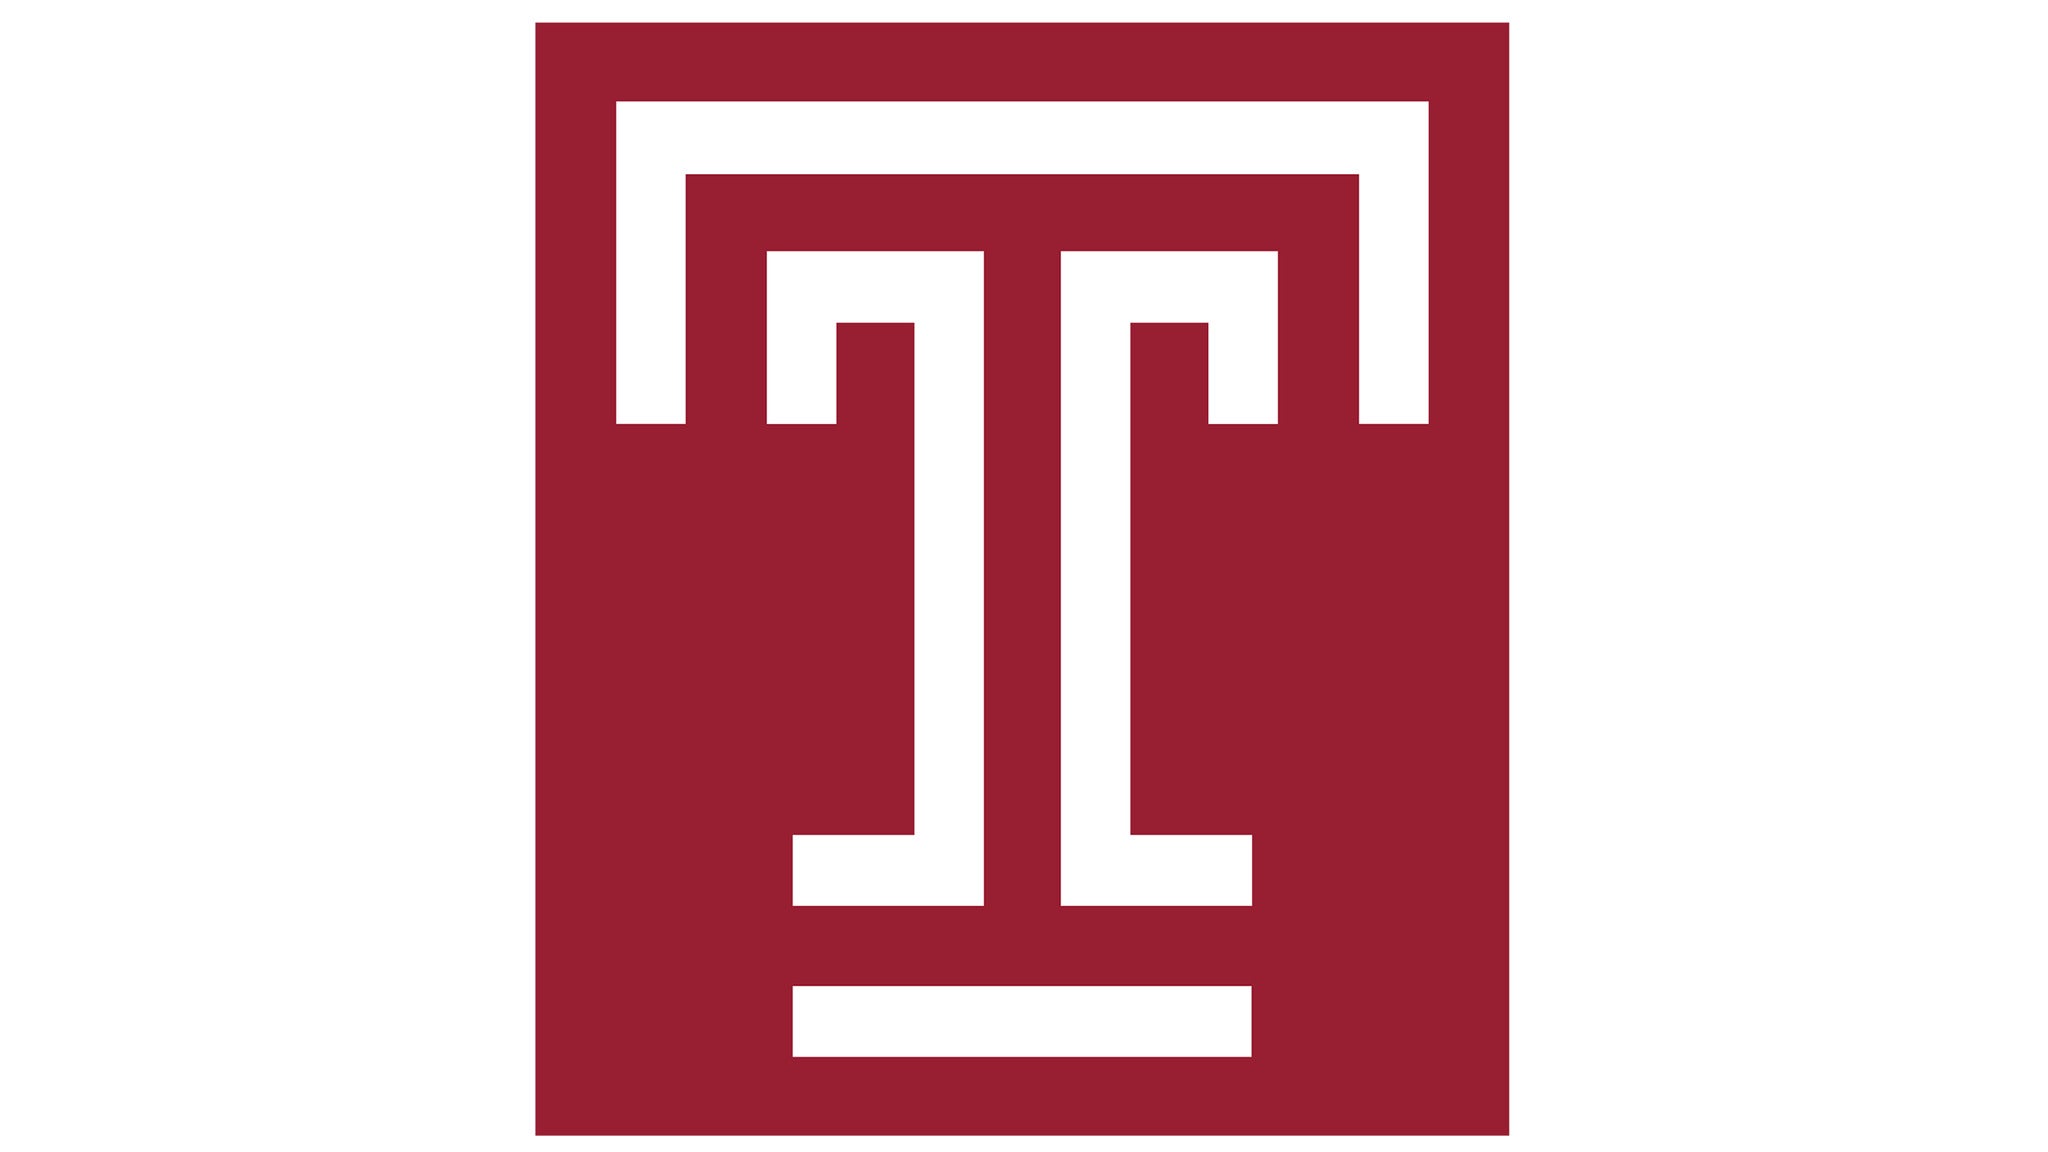 Temple University Owls Football vs. UTSA Roadrunners Football in Philadelphia promo photo for Temple presale offer code